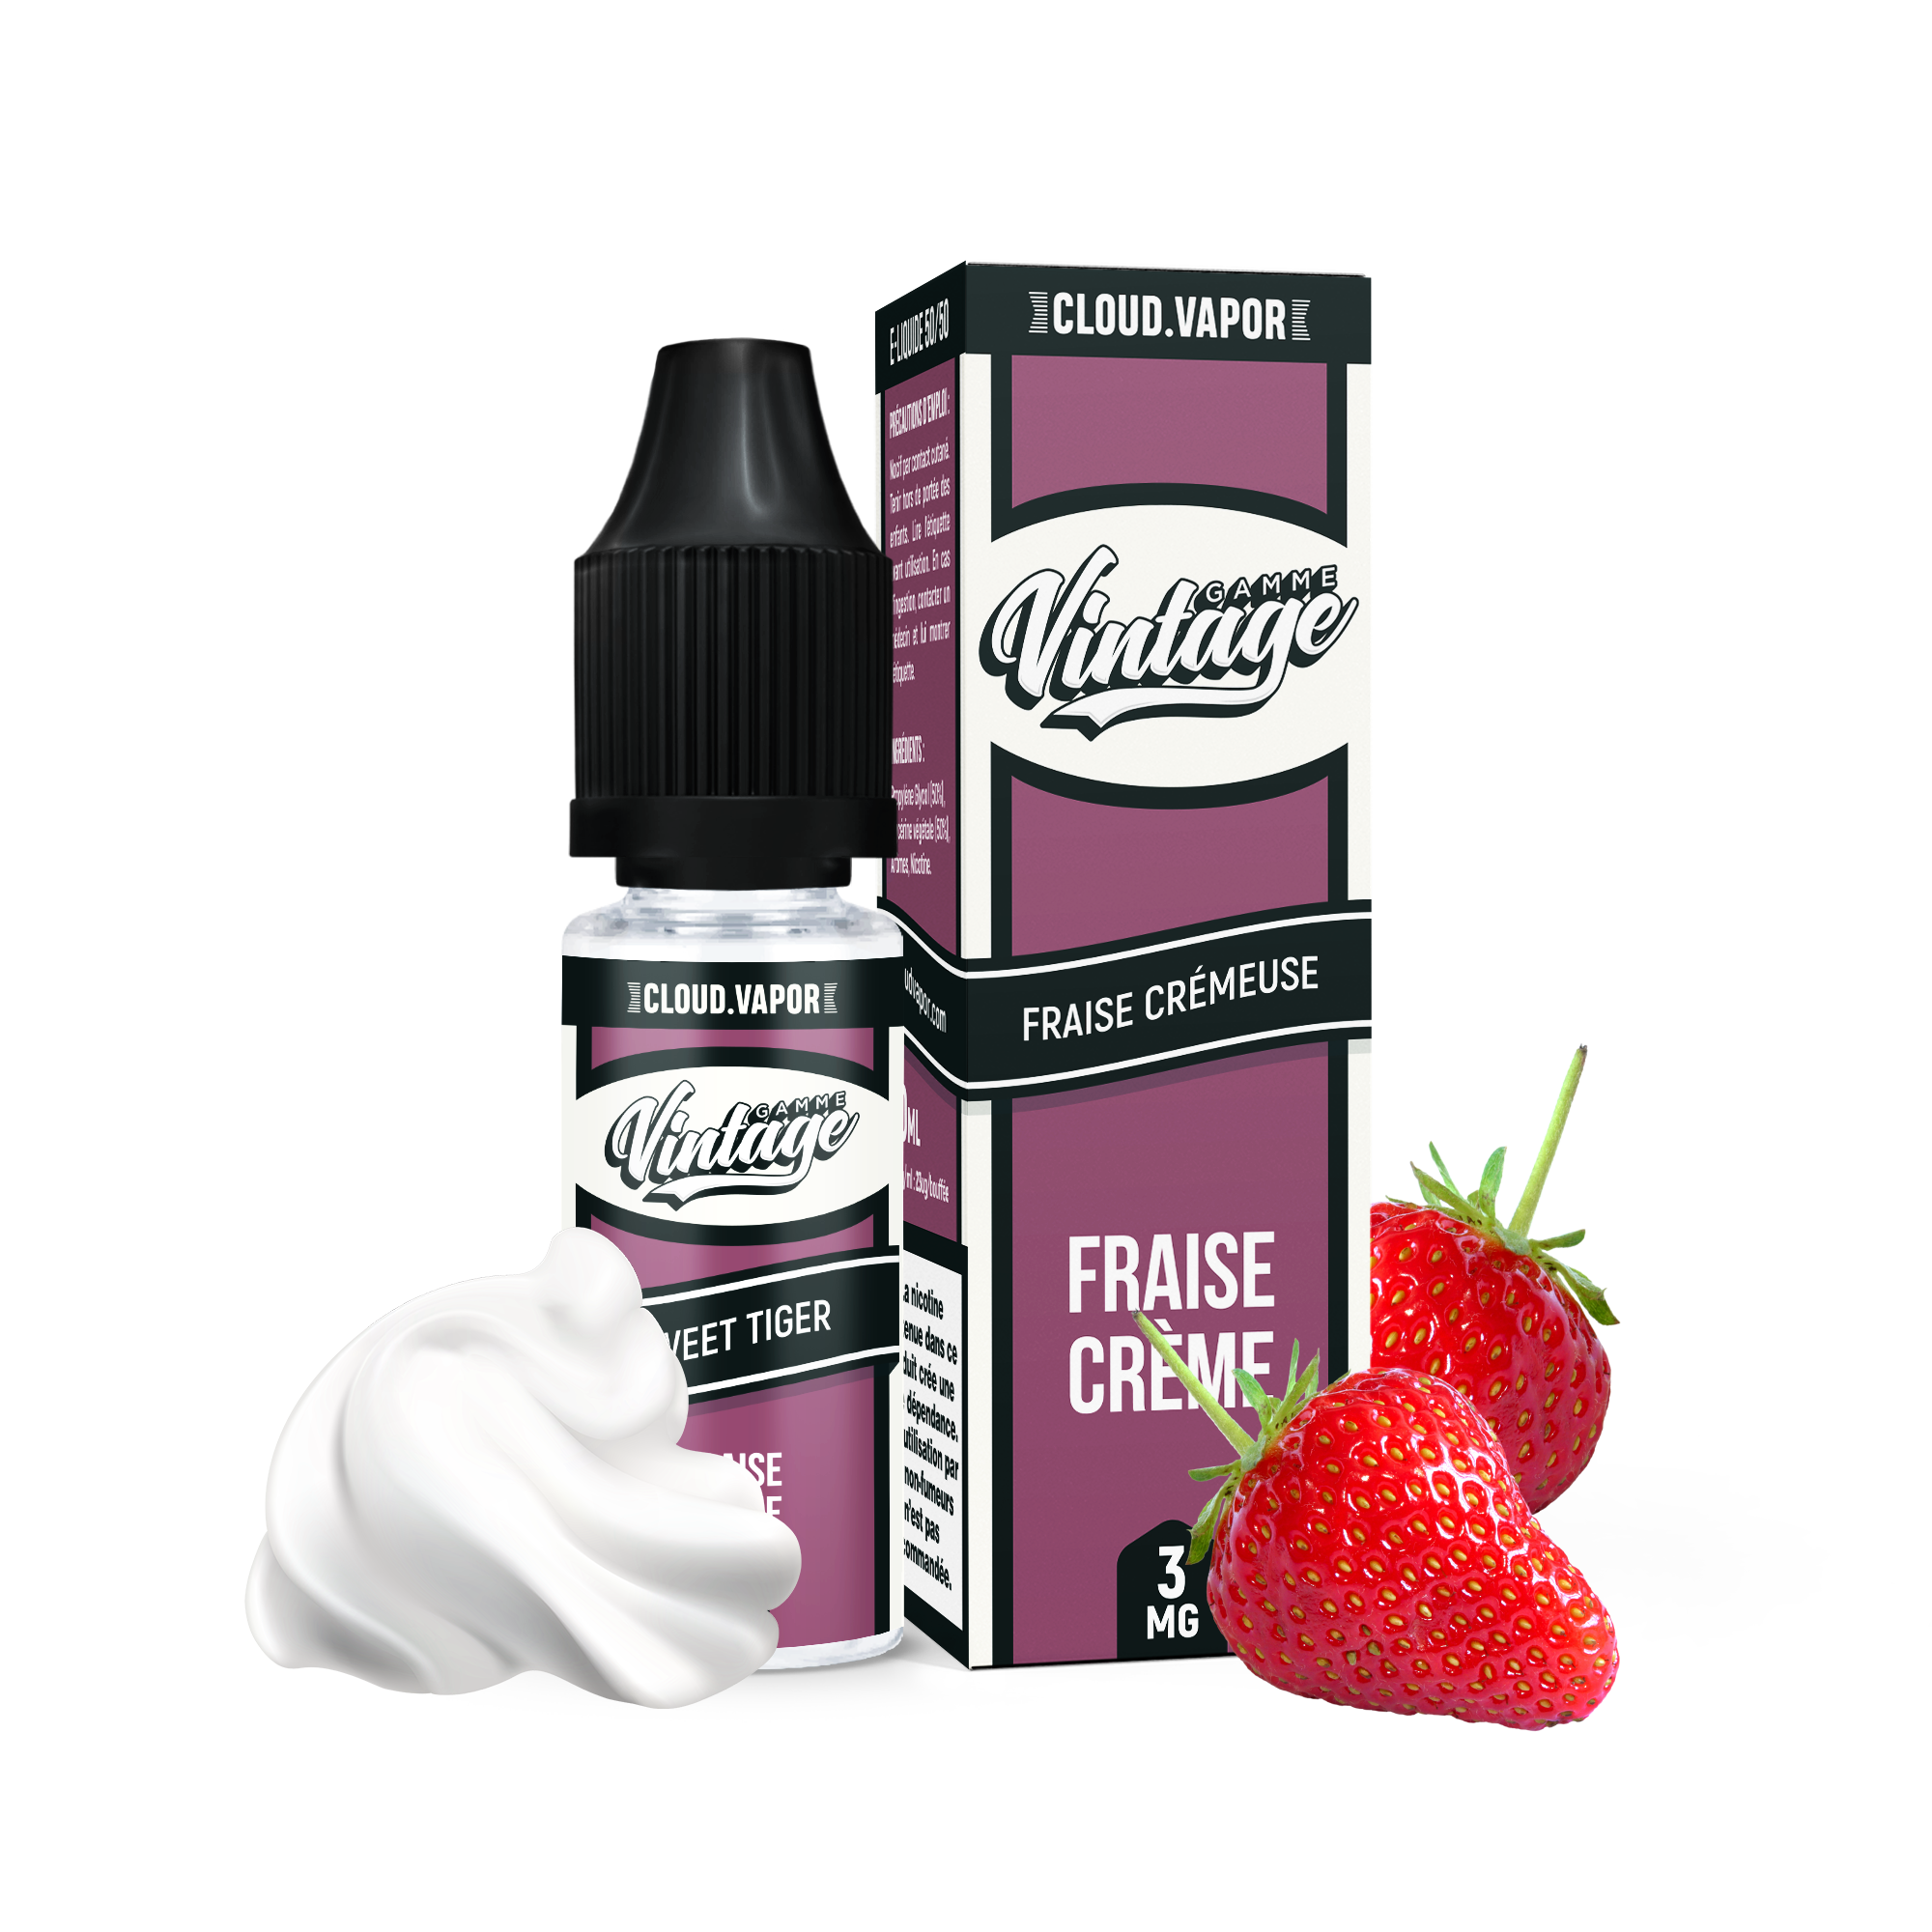 E-liquide SWEET TIGER de la Gamme Vintage en format 10ml nicotiné goût fraise et crème chantilly 